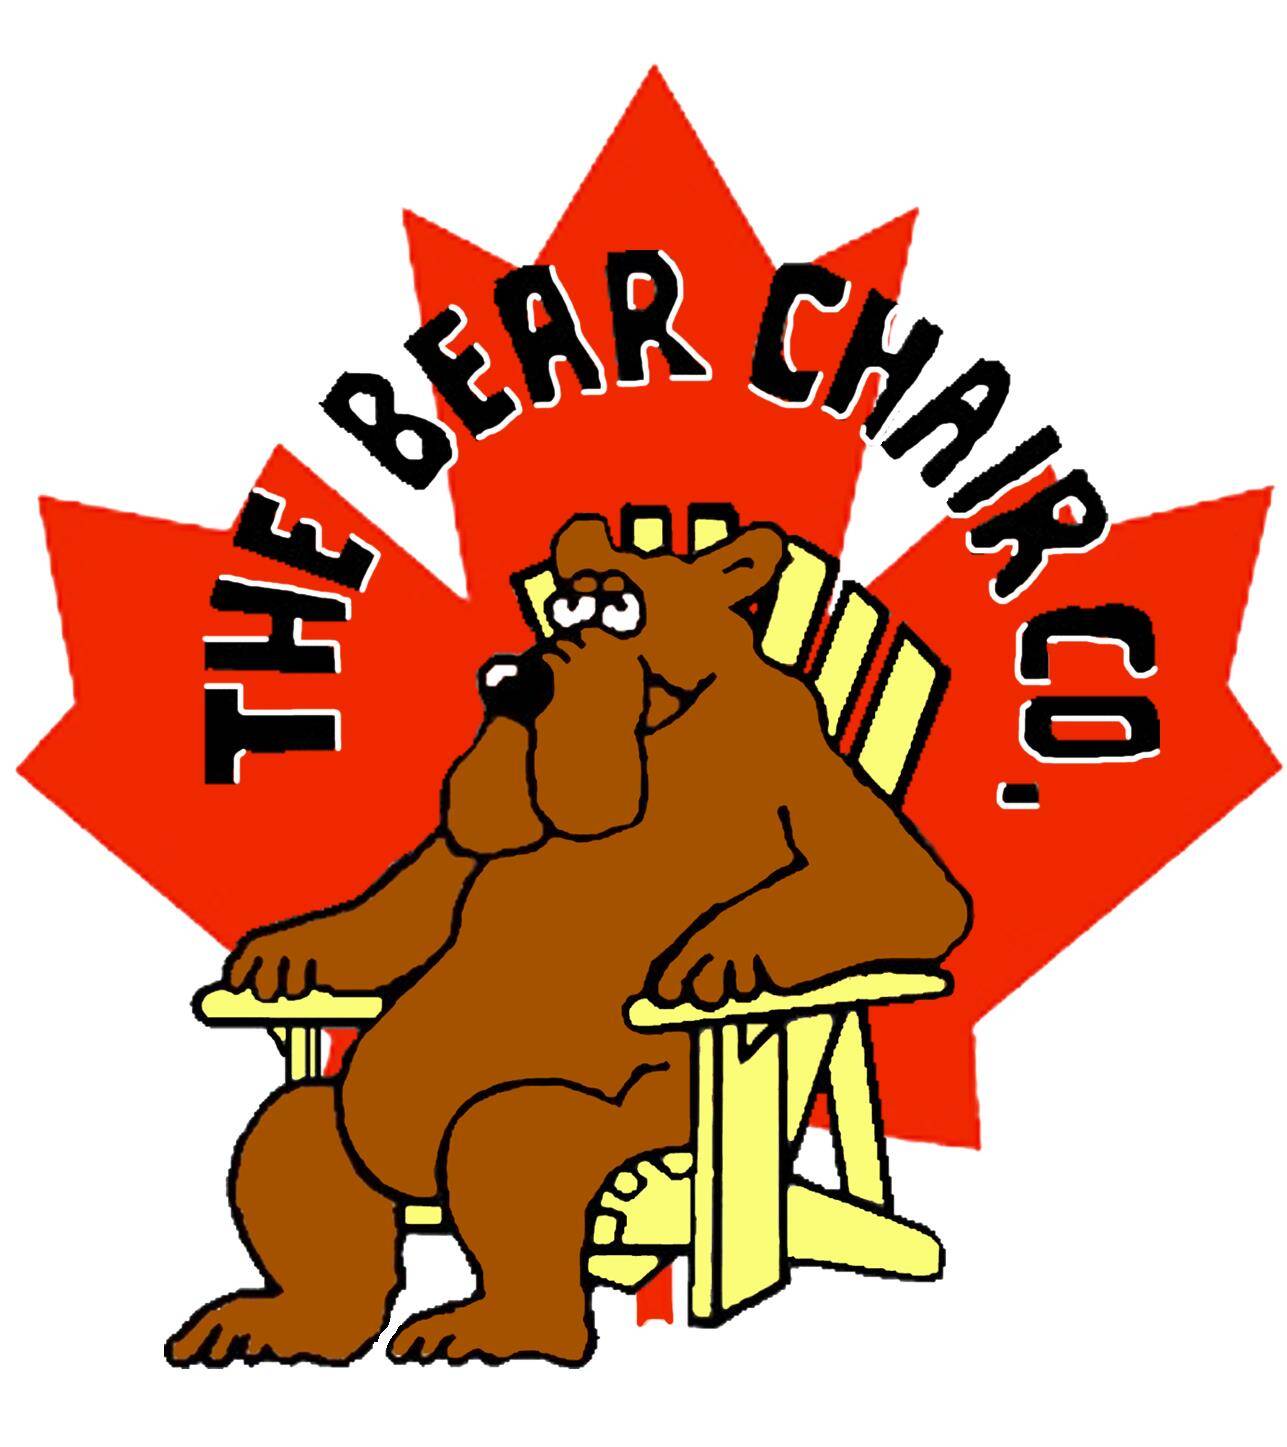 The Bear Chair Company